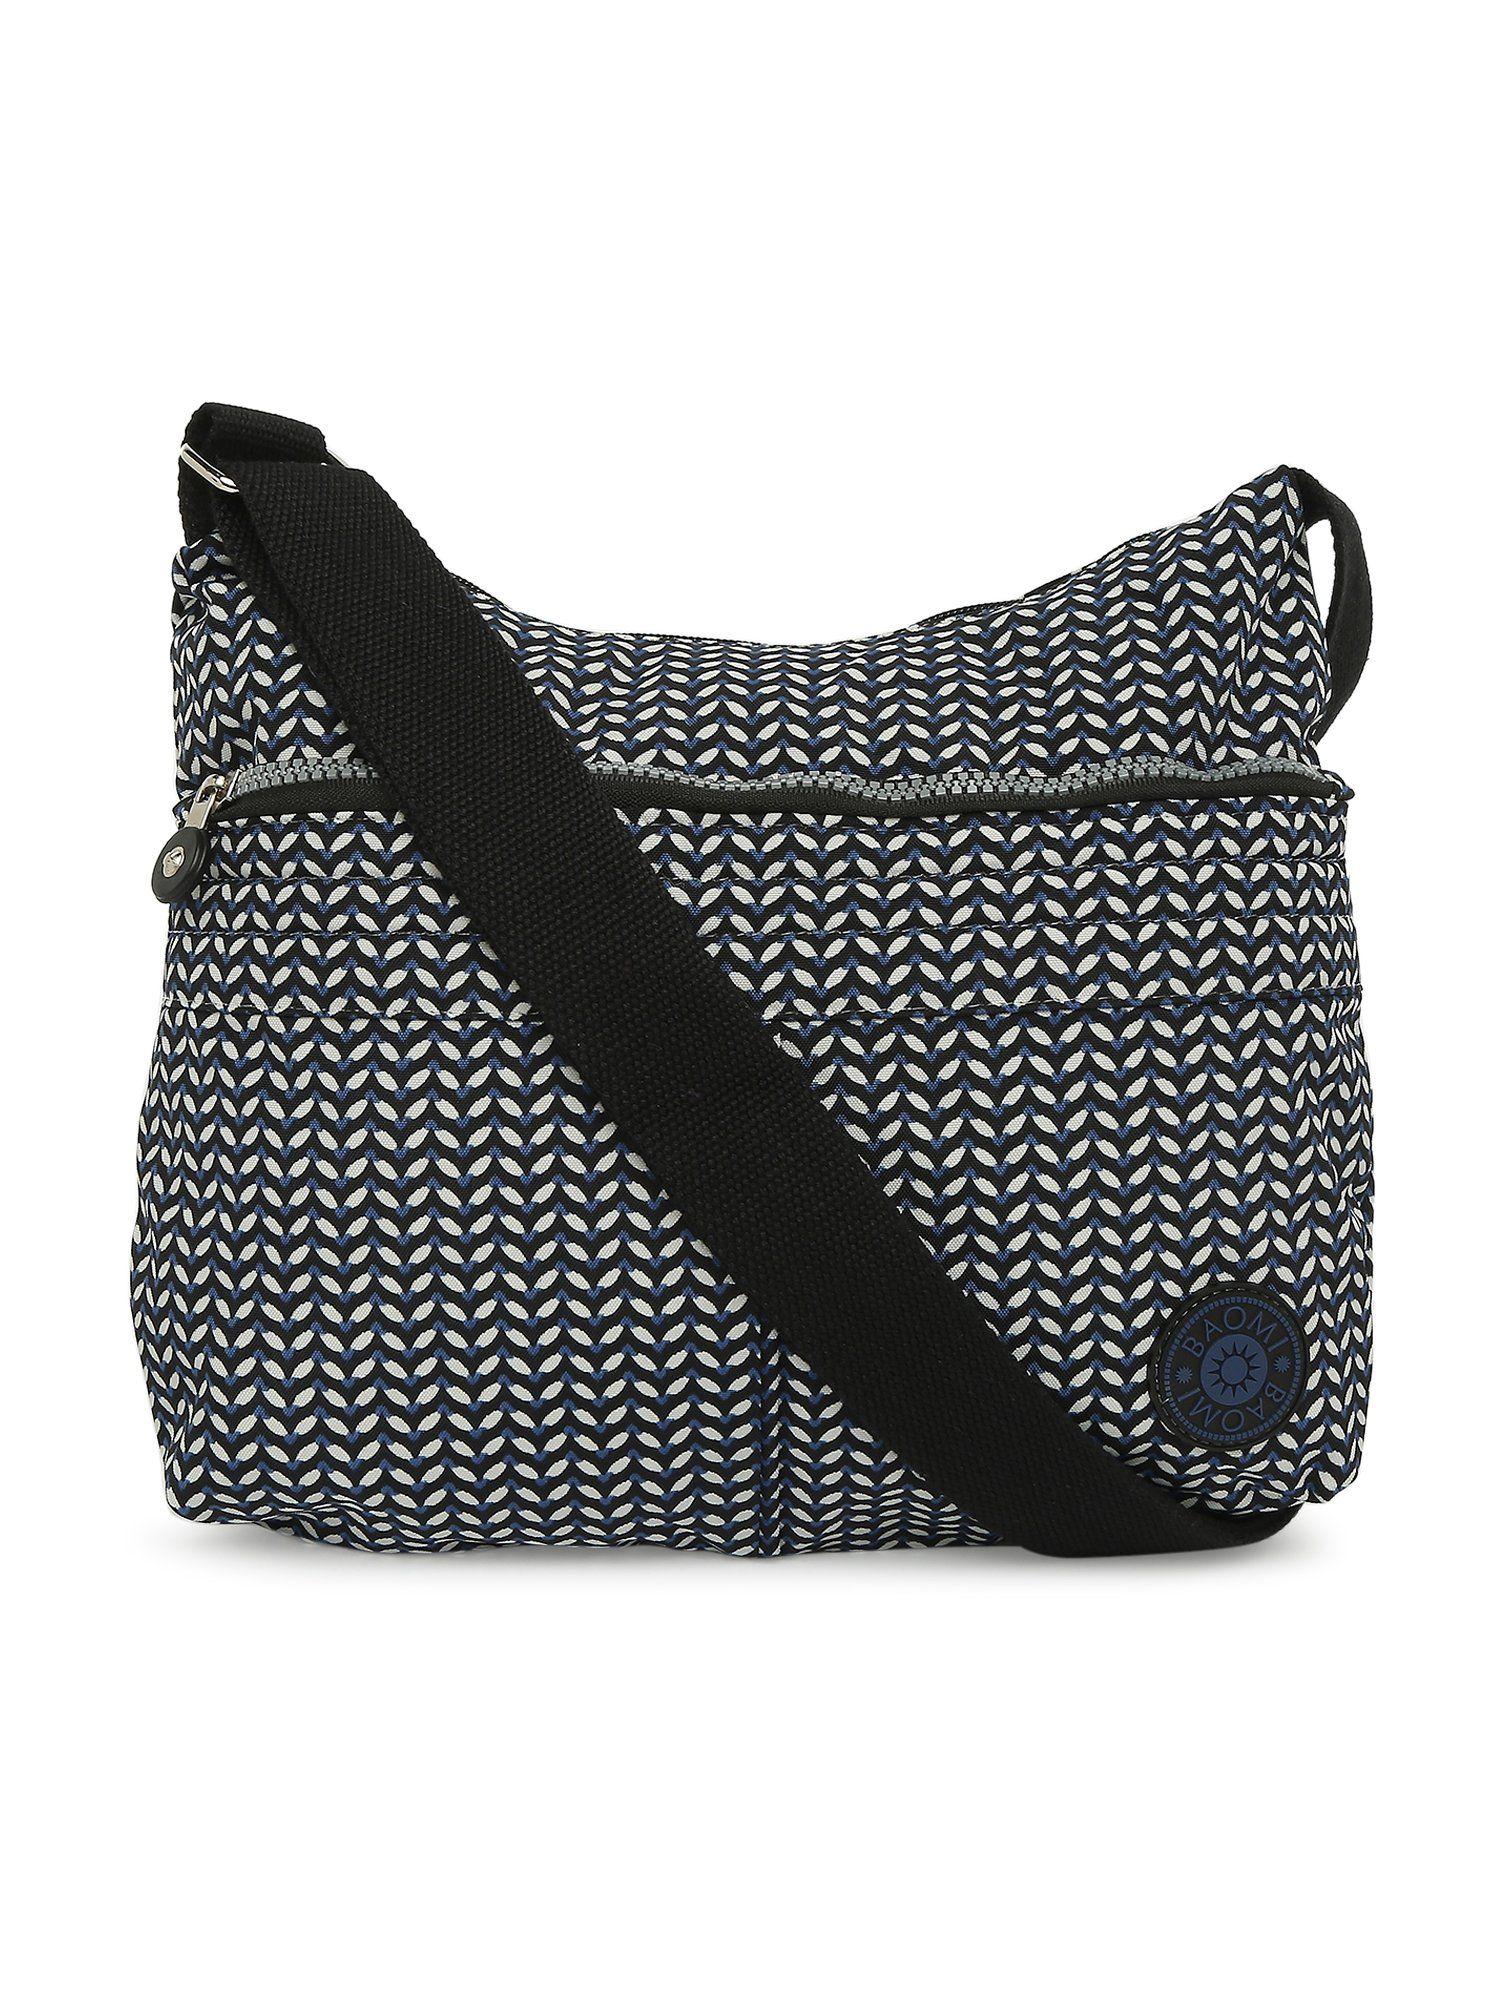 crinkle range black & white color soft case nylon sling bag - ba-1907031013